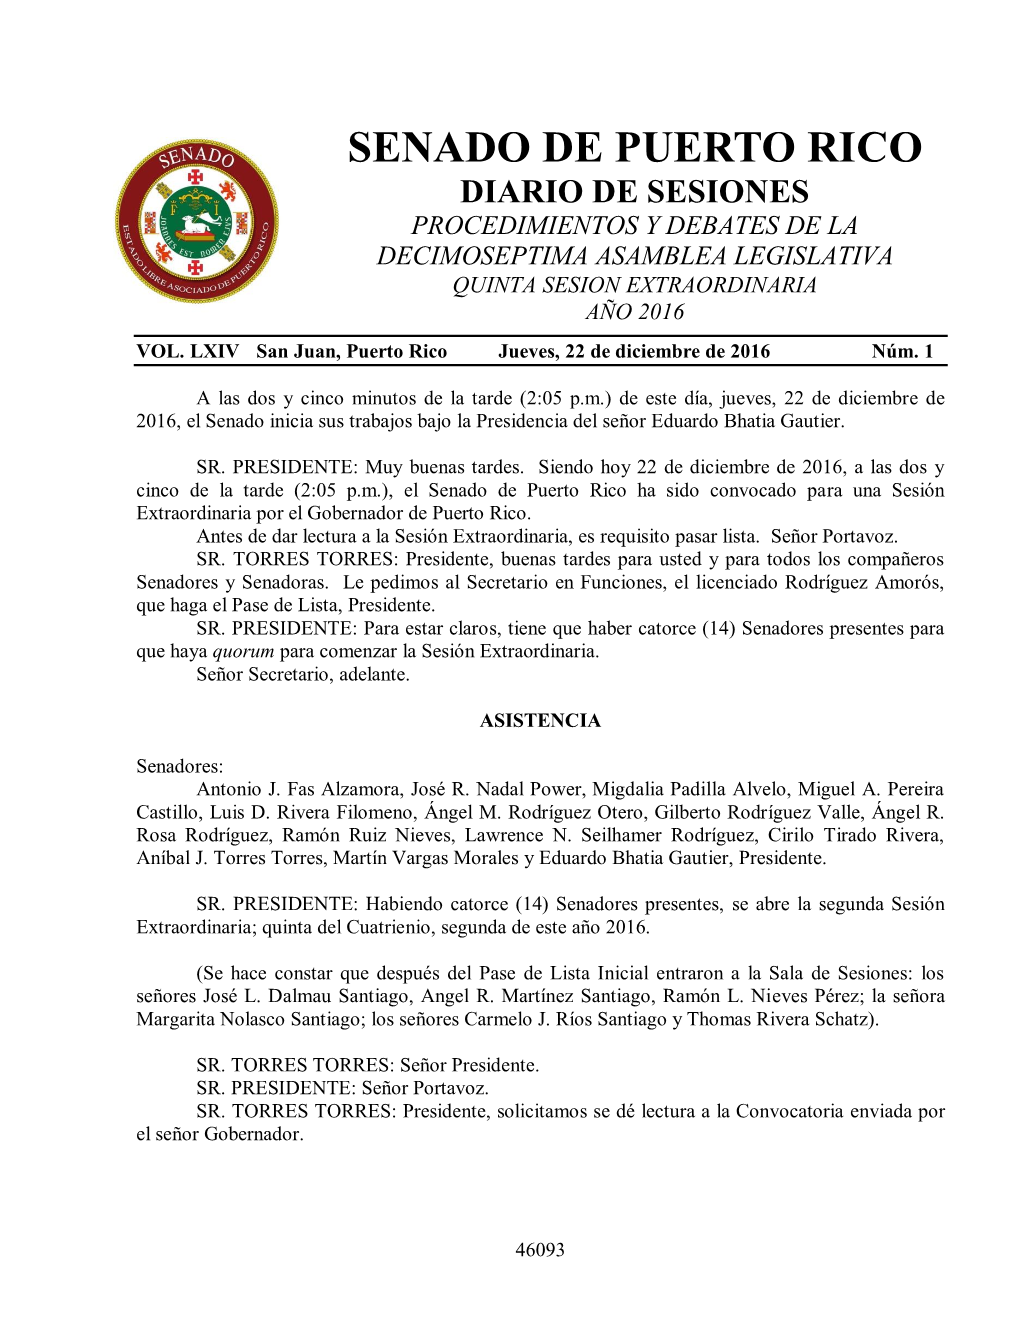 Senado De Puerto Rico Diario De Sesiones Procedimientos Y Debates De La Decimoseptima Asamblea Legislativa Quinta Sesion Extraordinaria Año 2016 Vol